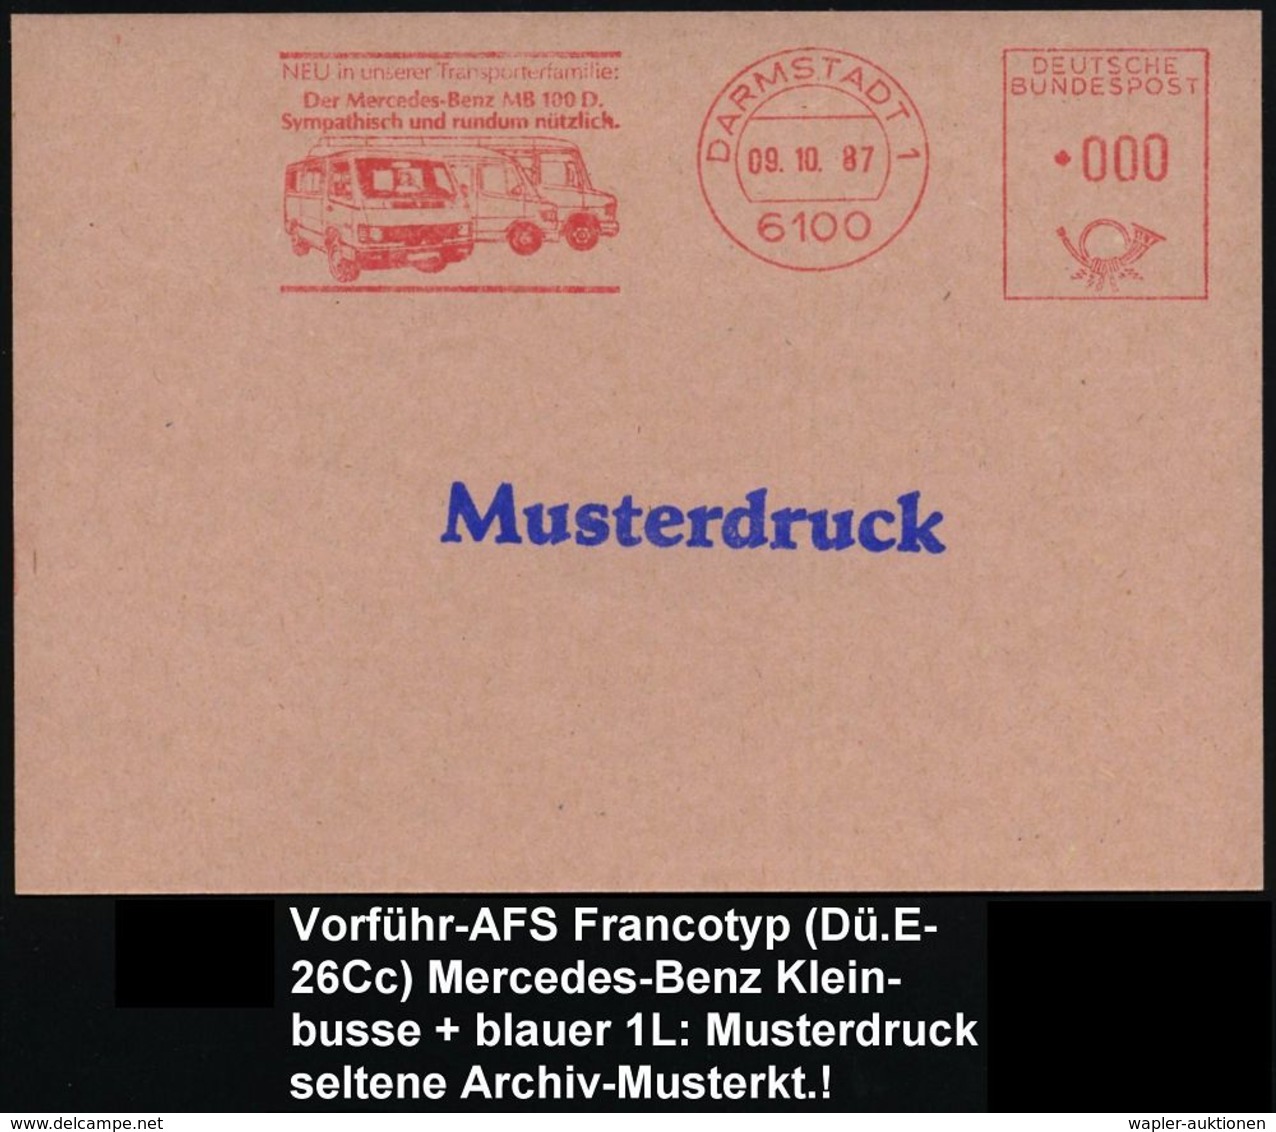 MERCEDES-BENZ  / DAIMLER BENZ : 6100 DARMSTADT 1/ ..Der Mercedes-Benz 100 D... 1987 (9.10.) AFS In 000, Francoty-Archiv- - Automobili